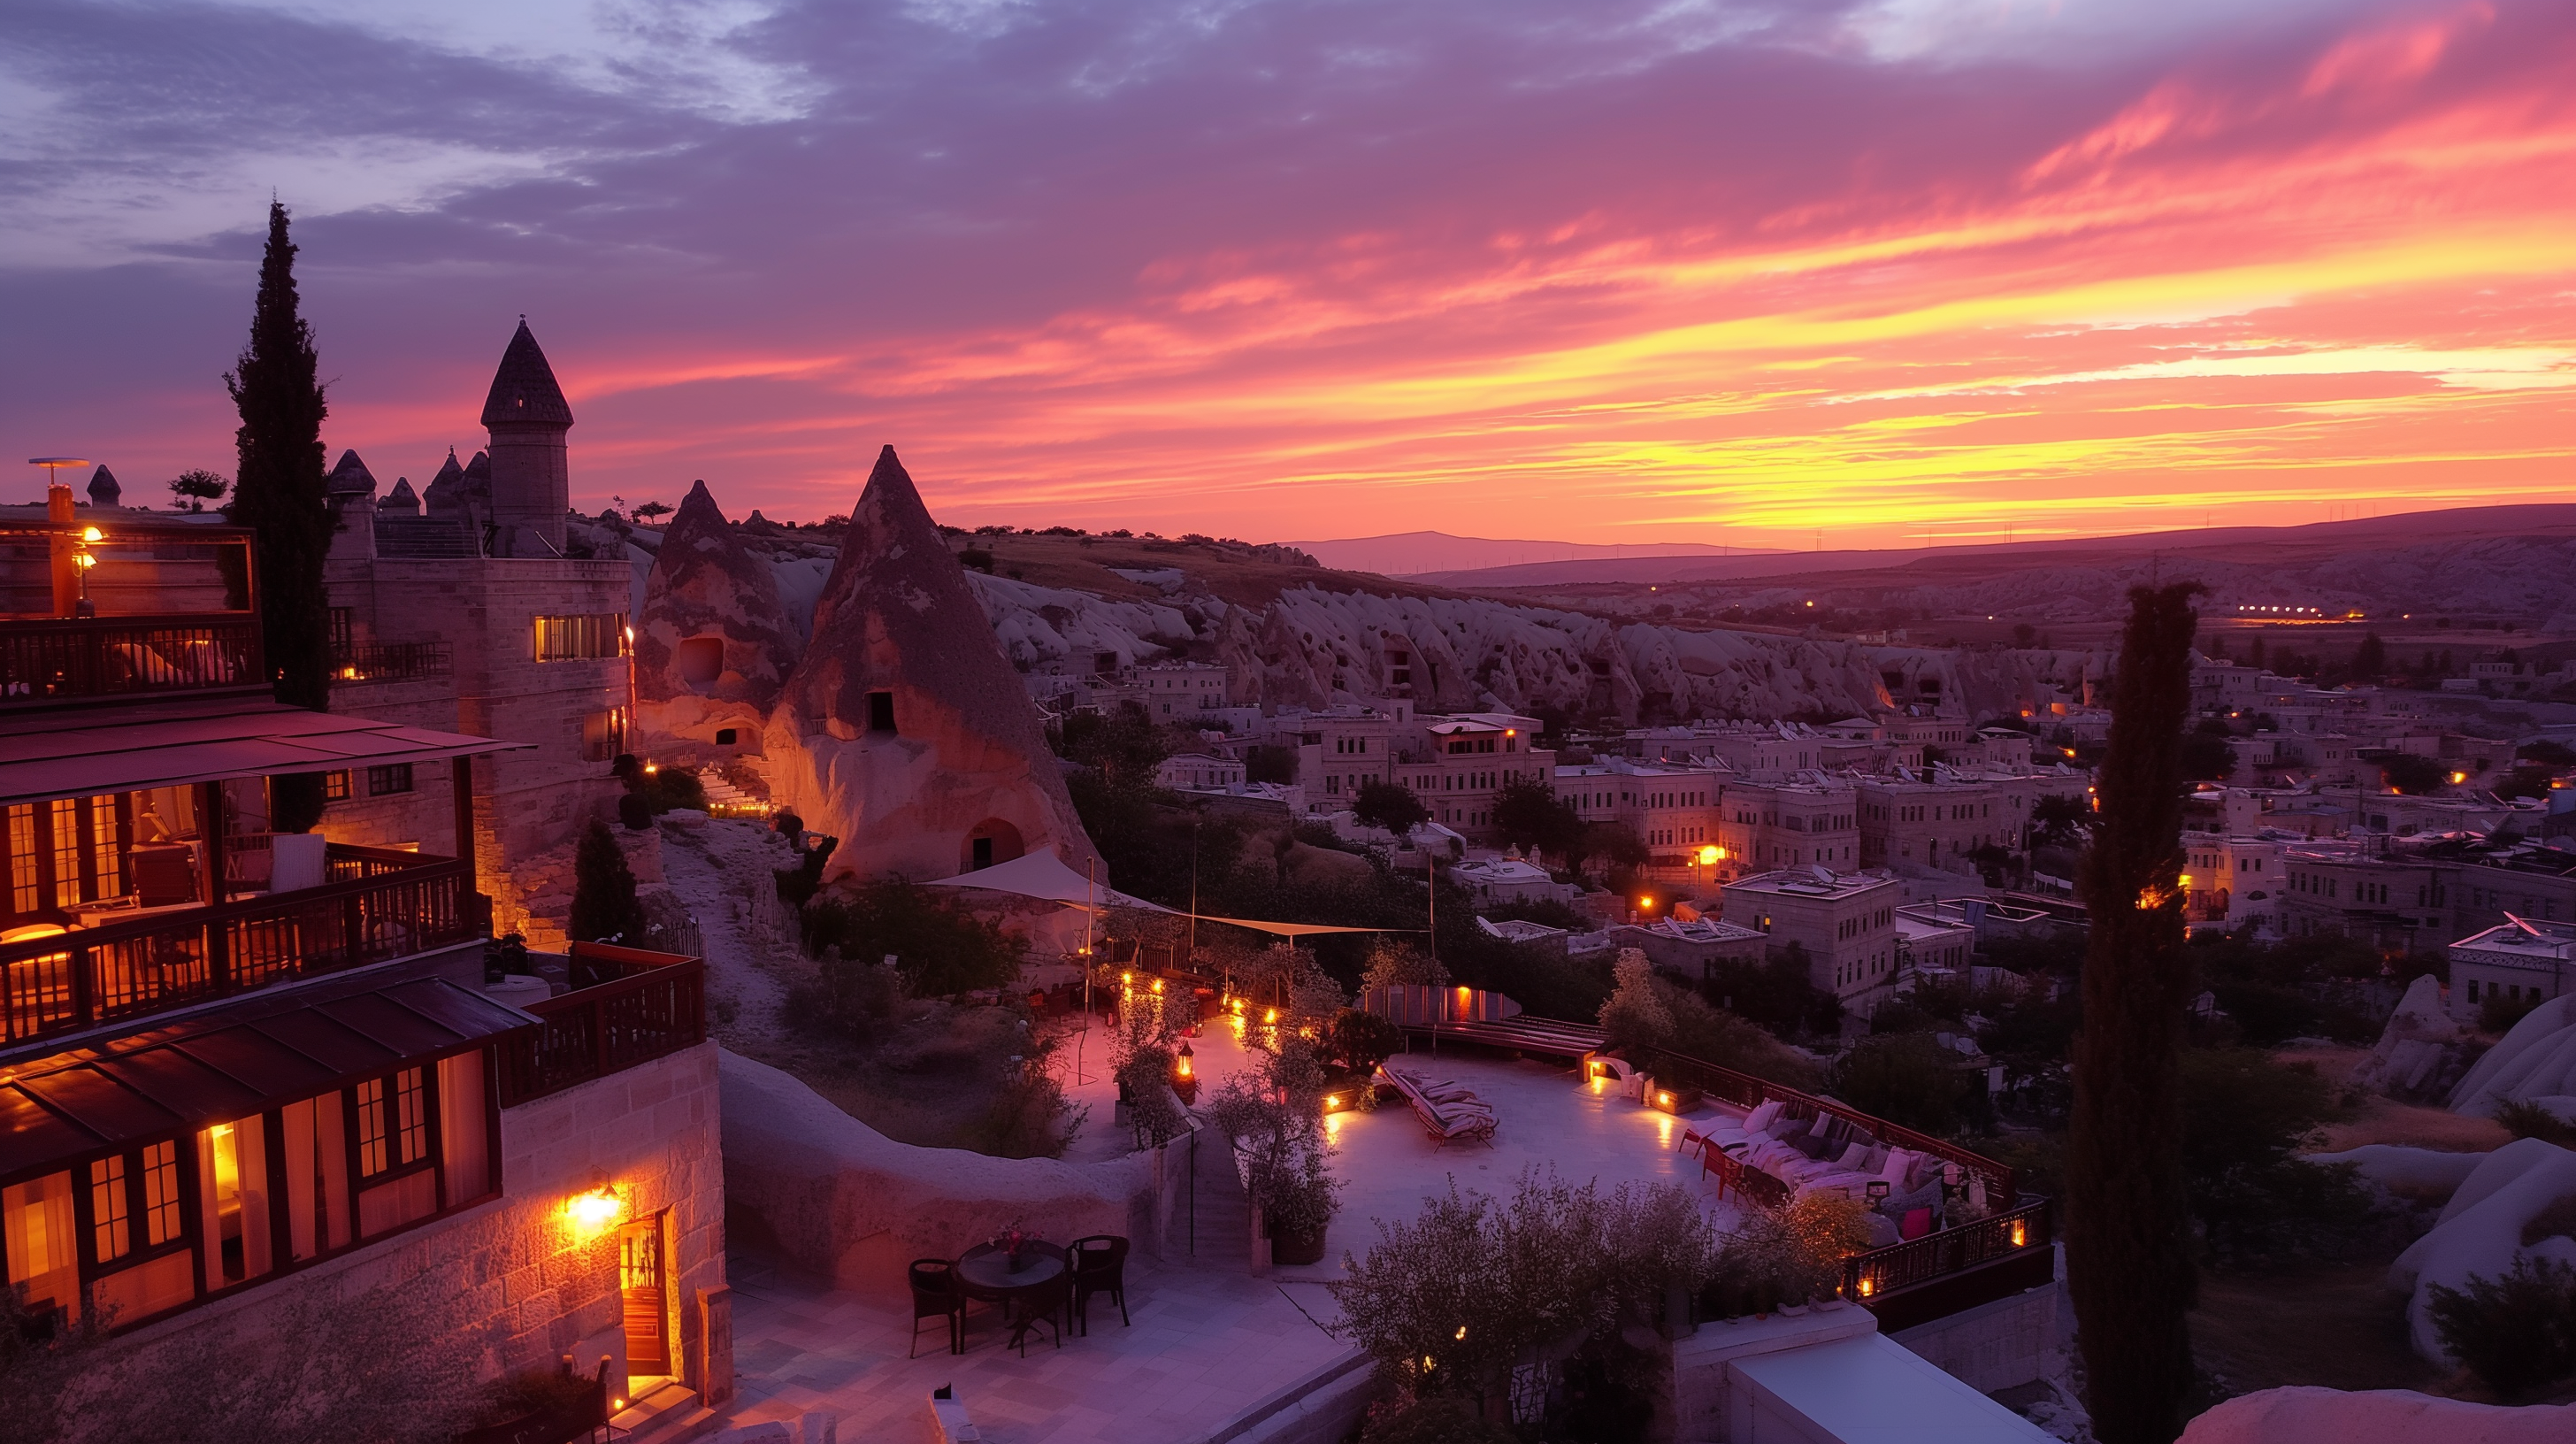 Imagen de Capadocia tomada desde un hotel.